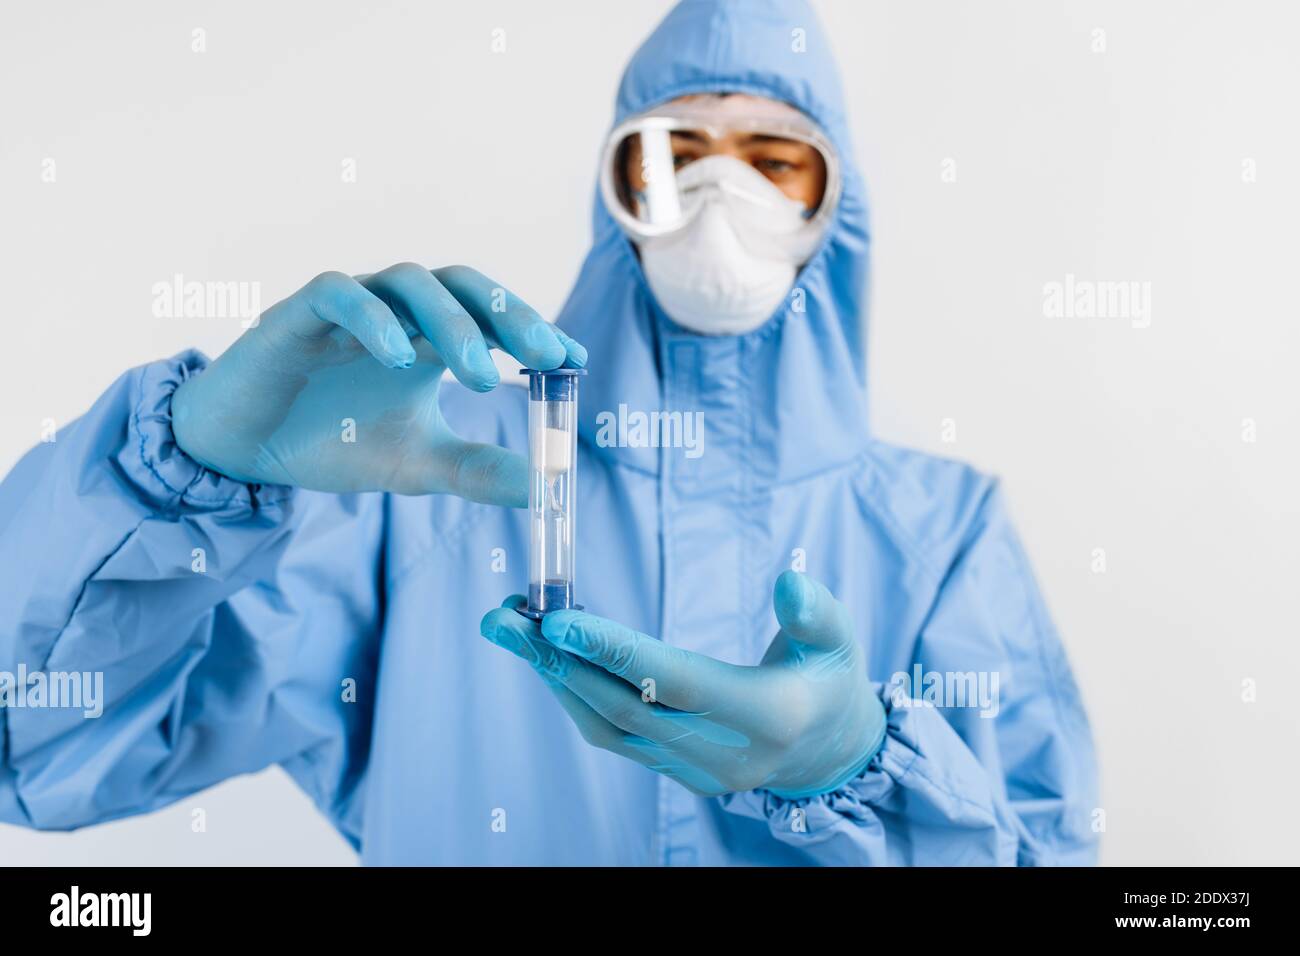 Medico maschile in un vestito protettivo e una maschera medica sul viso, guardando una clessidra con sabbia che scorre verso il basso, tempo limitato Foto Stock